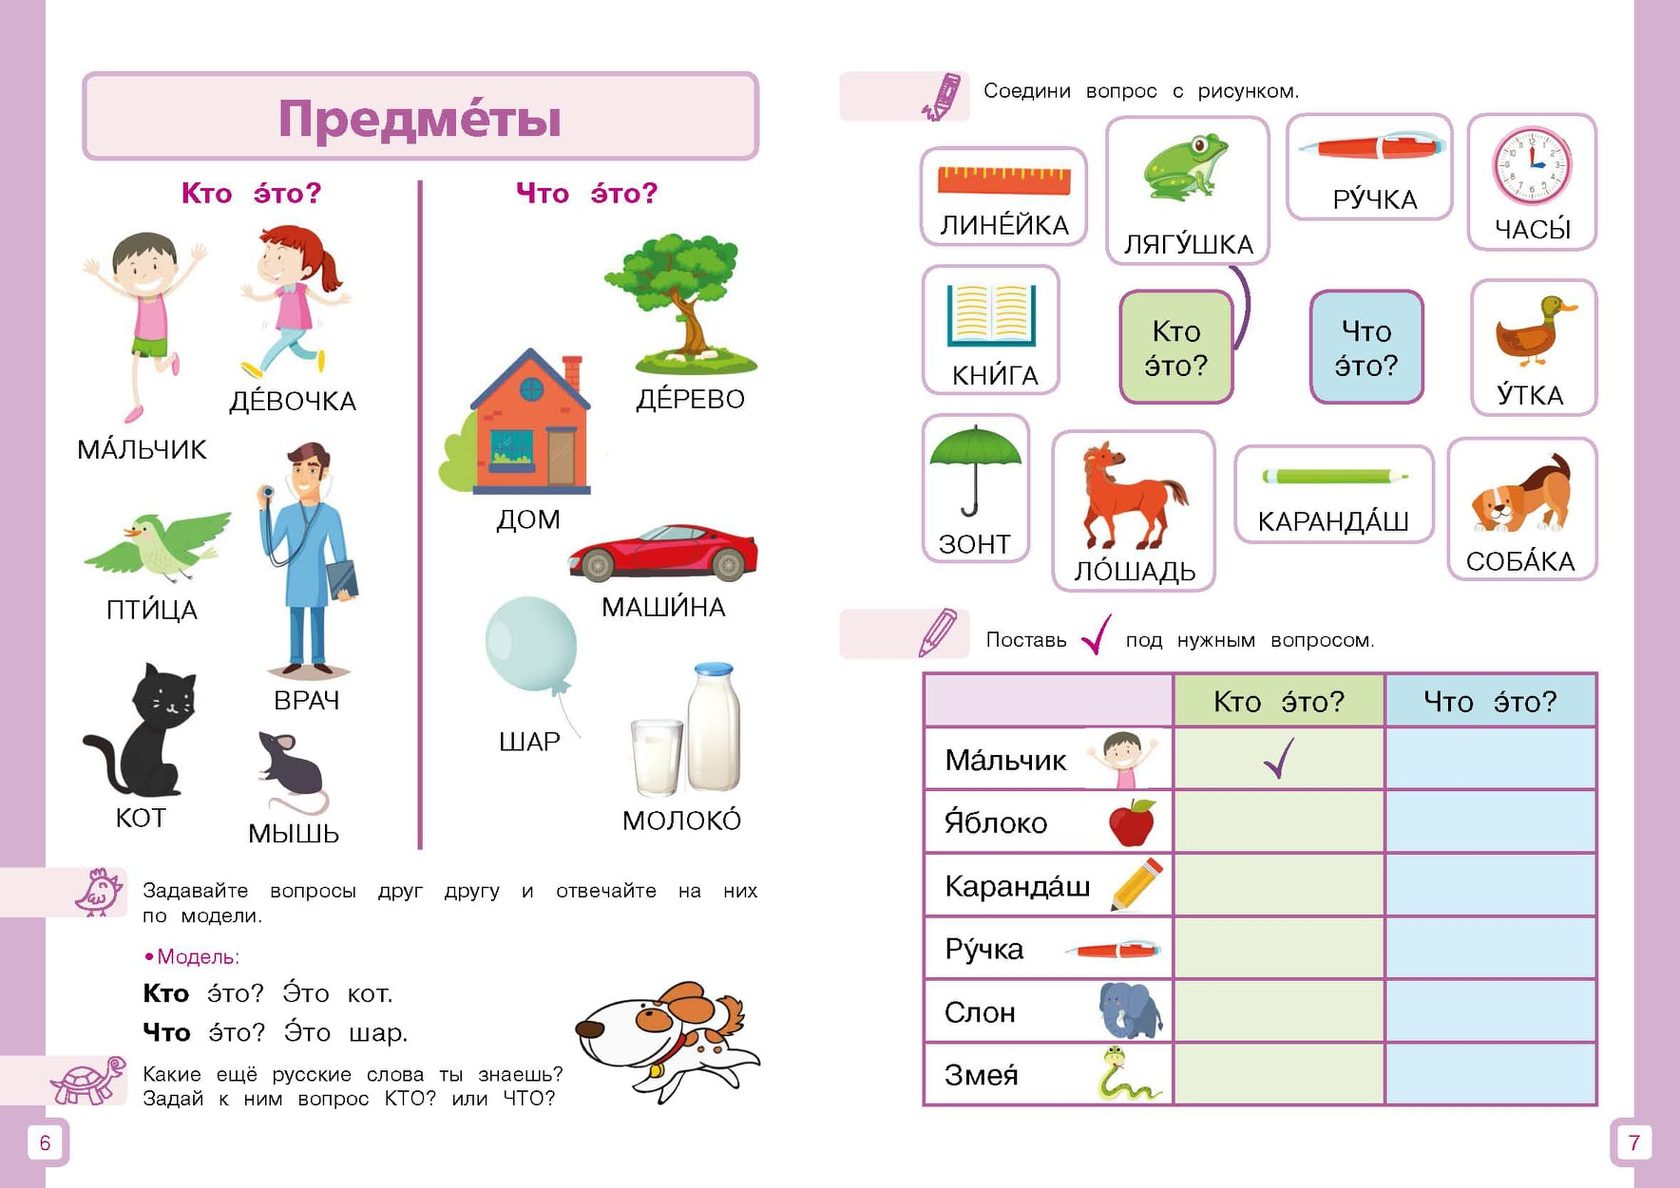 Сум рки. Задания для детей билингвов. Задания для детей билингвов по русскому языку. Задания по РКИ для детей. РКИ для детей билингвов.